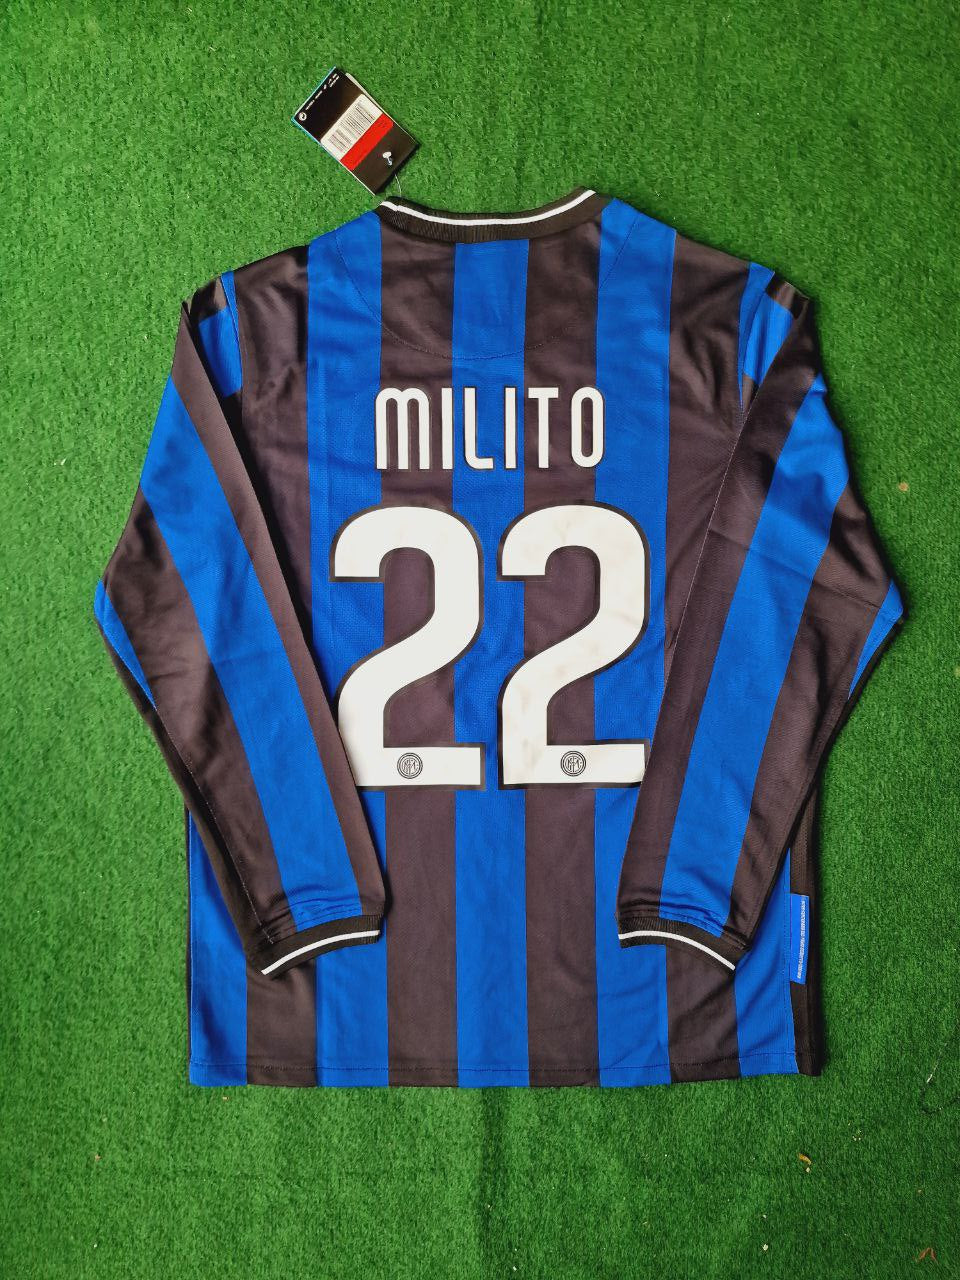 Diego Milito Inter Fc Retro Football Jersey